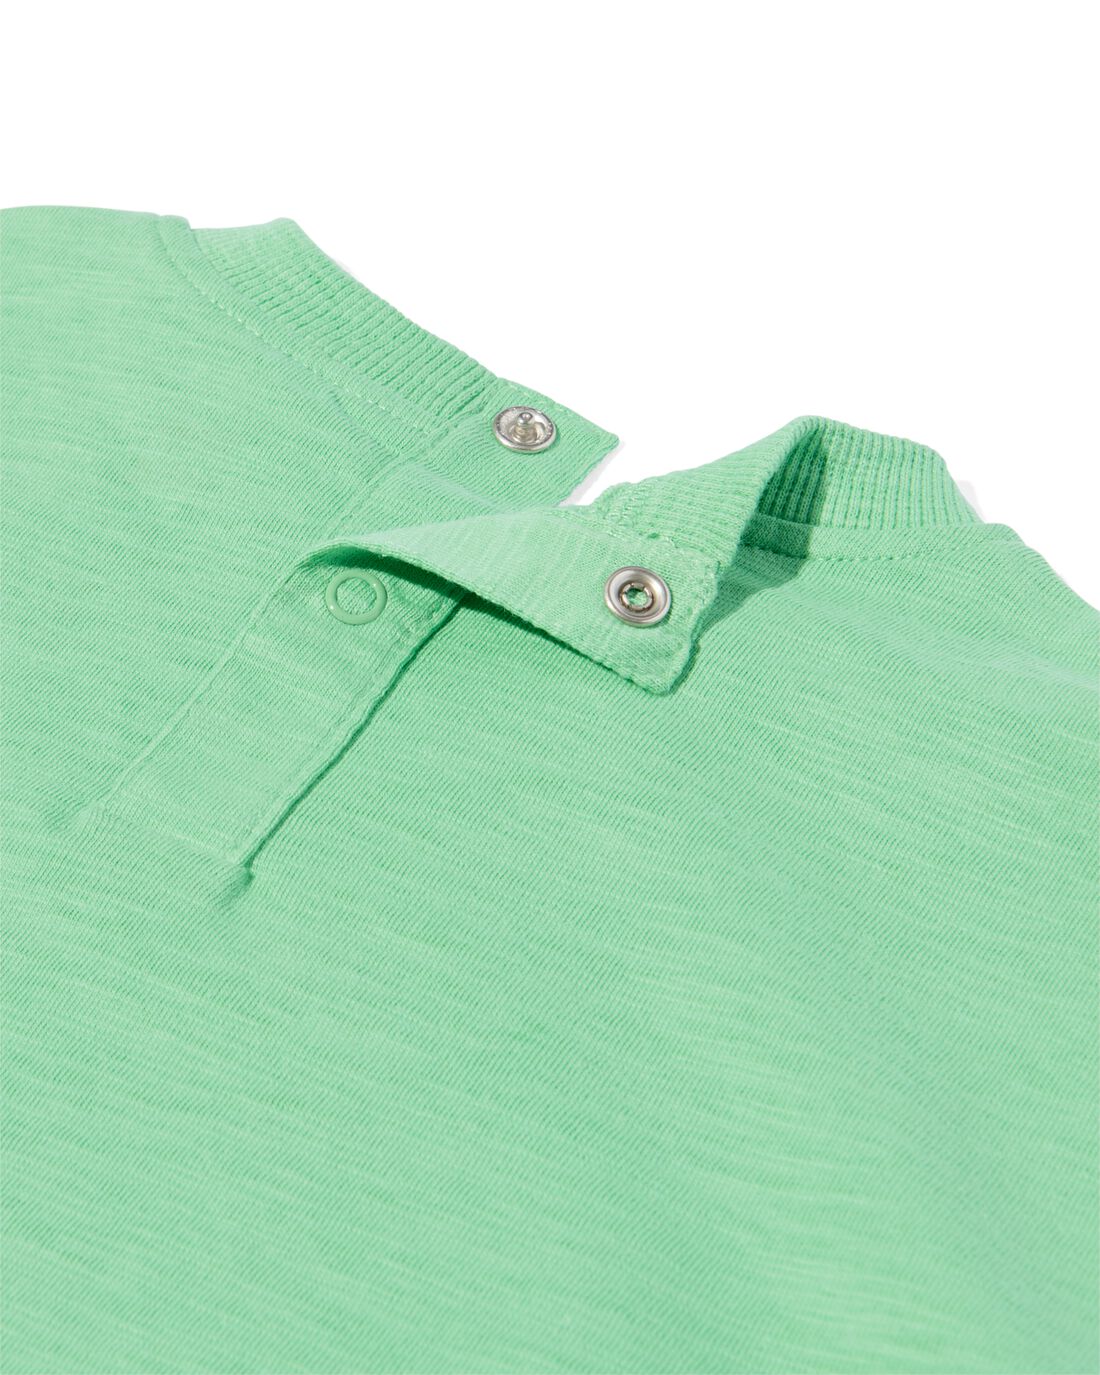 HEMA Baby T-shirts 2 Stuks Groen (groen)